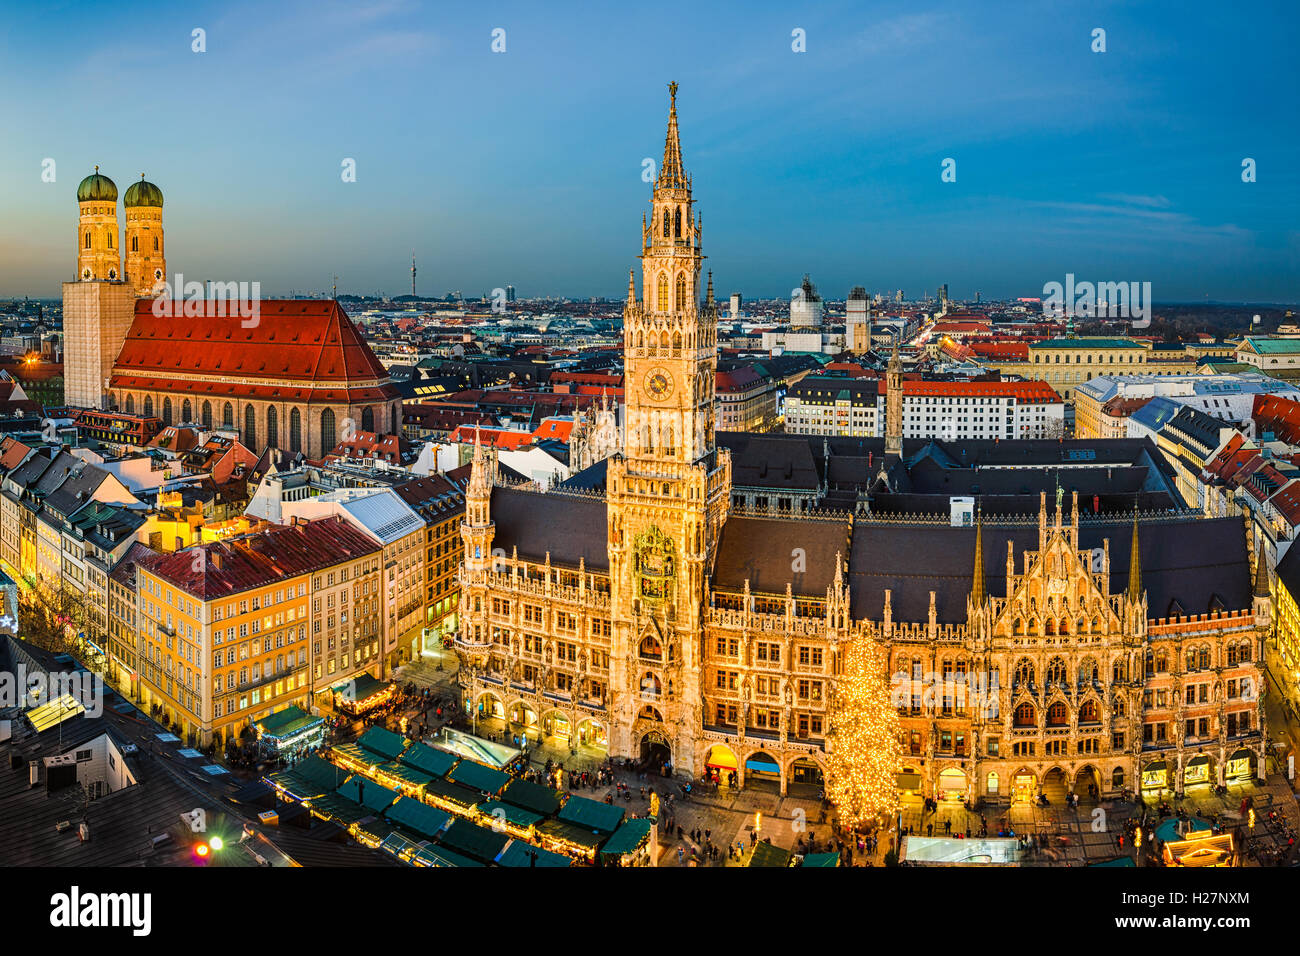 Vue de nuit sur la Marienplatz avec le marché de Noël à Munich, Allemagne Banque D'Images